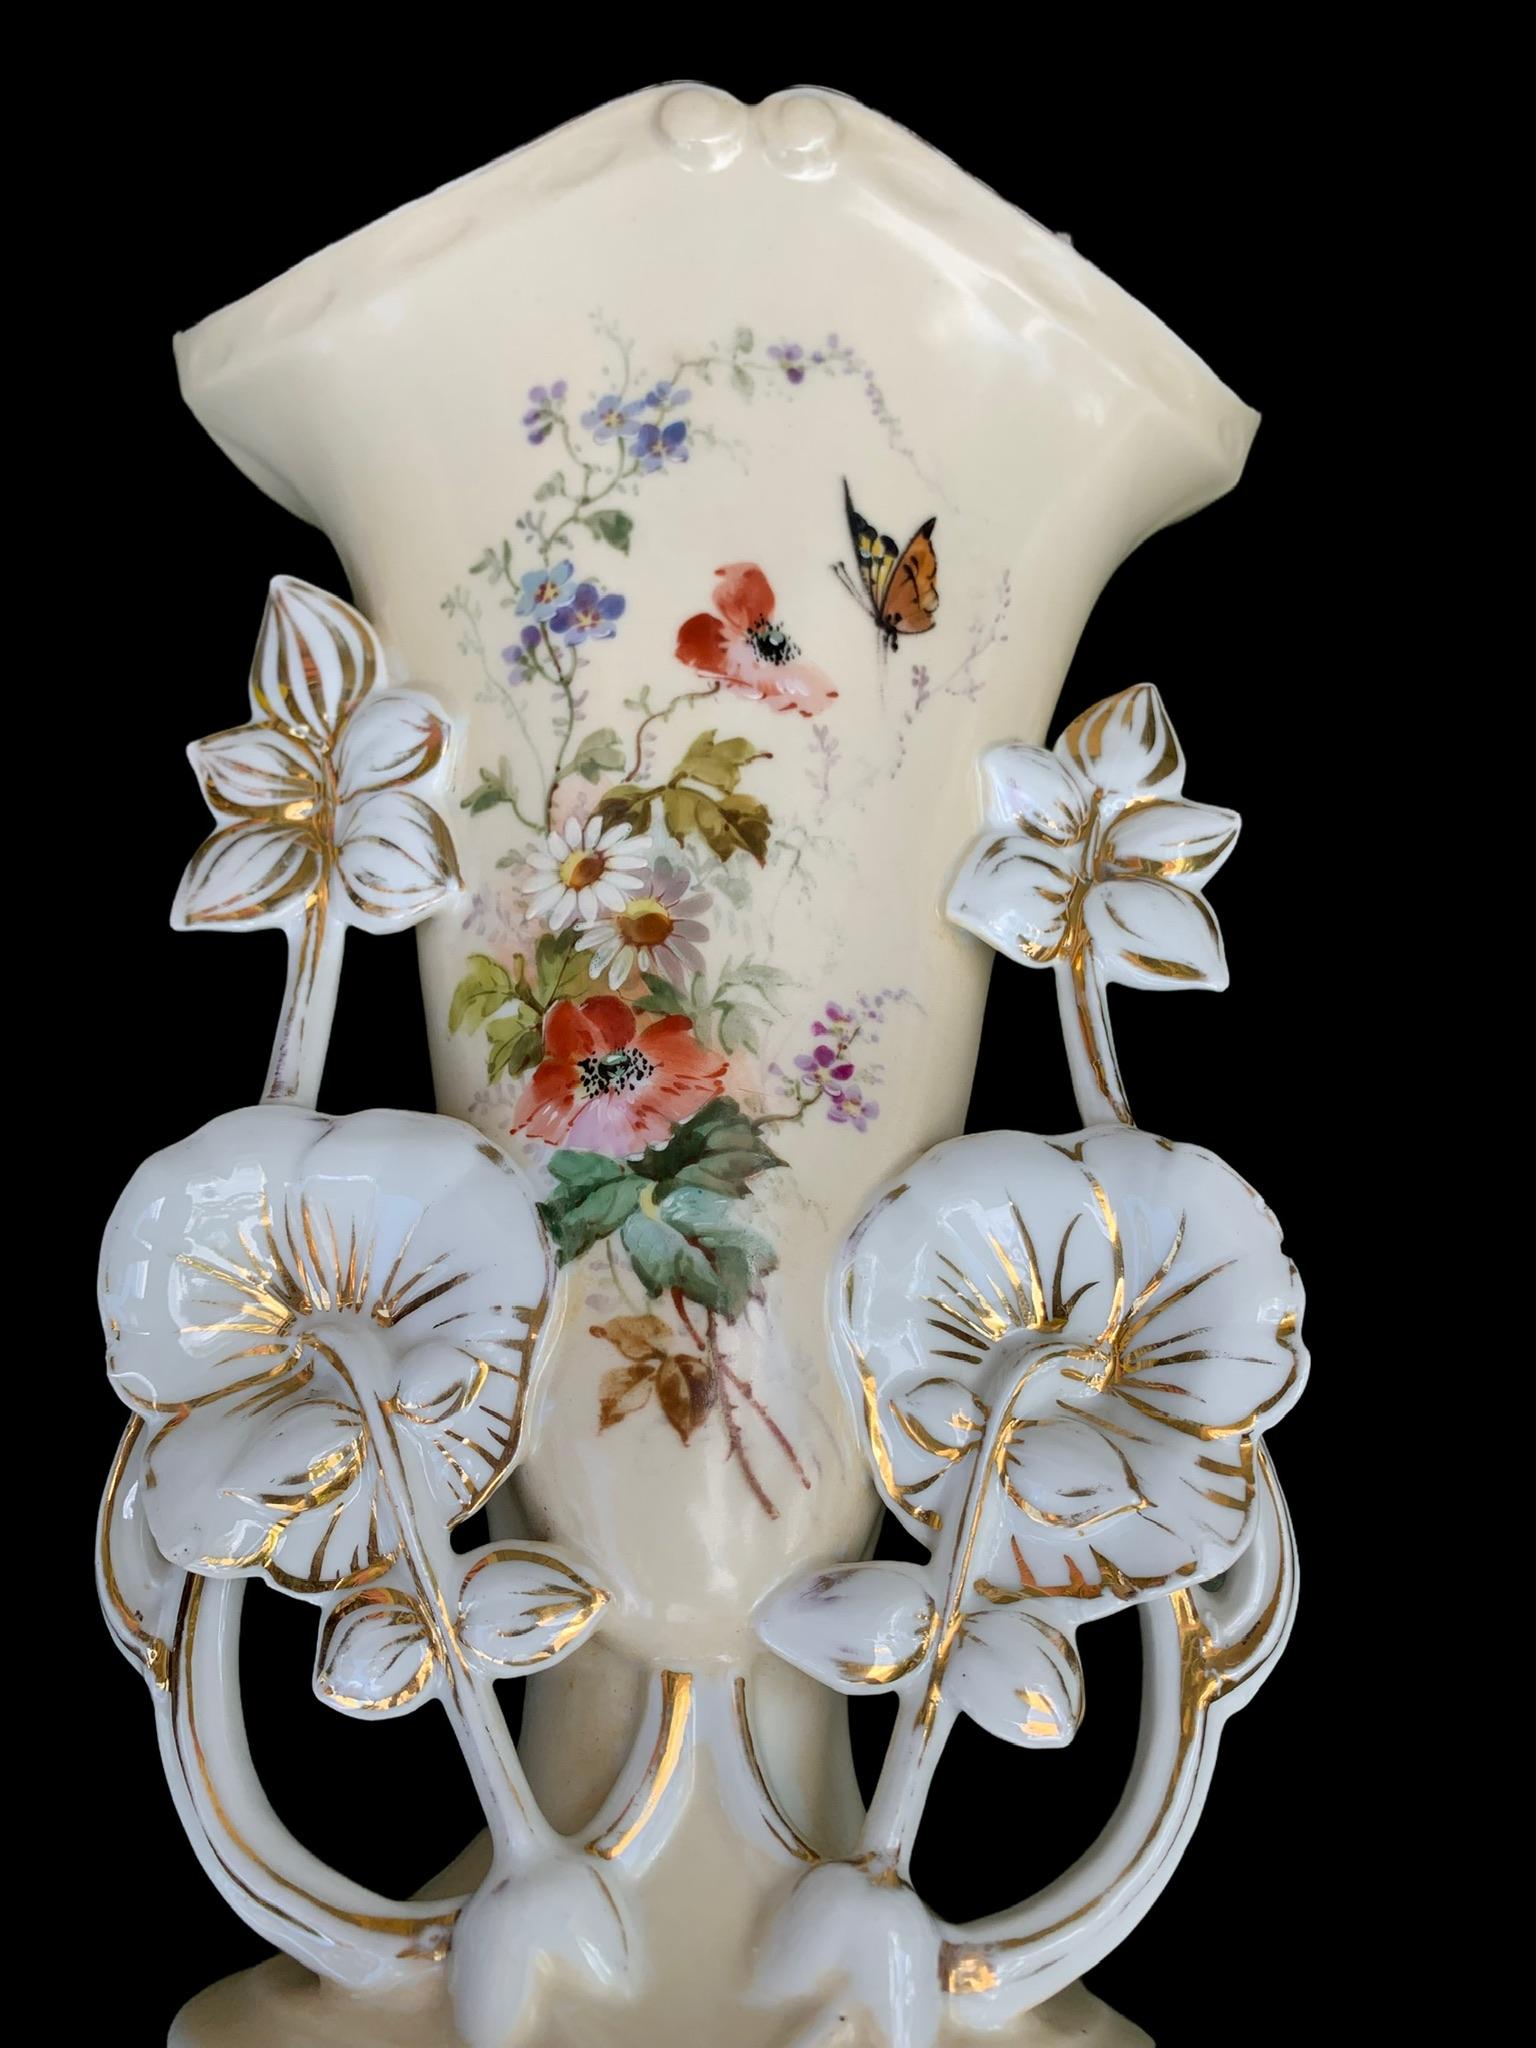 Enameled Pr. of Antique French Old Paris Porcelain Mantle Vases